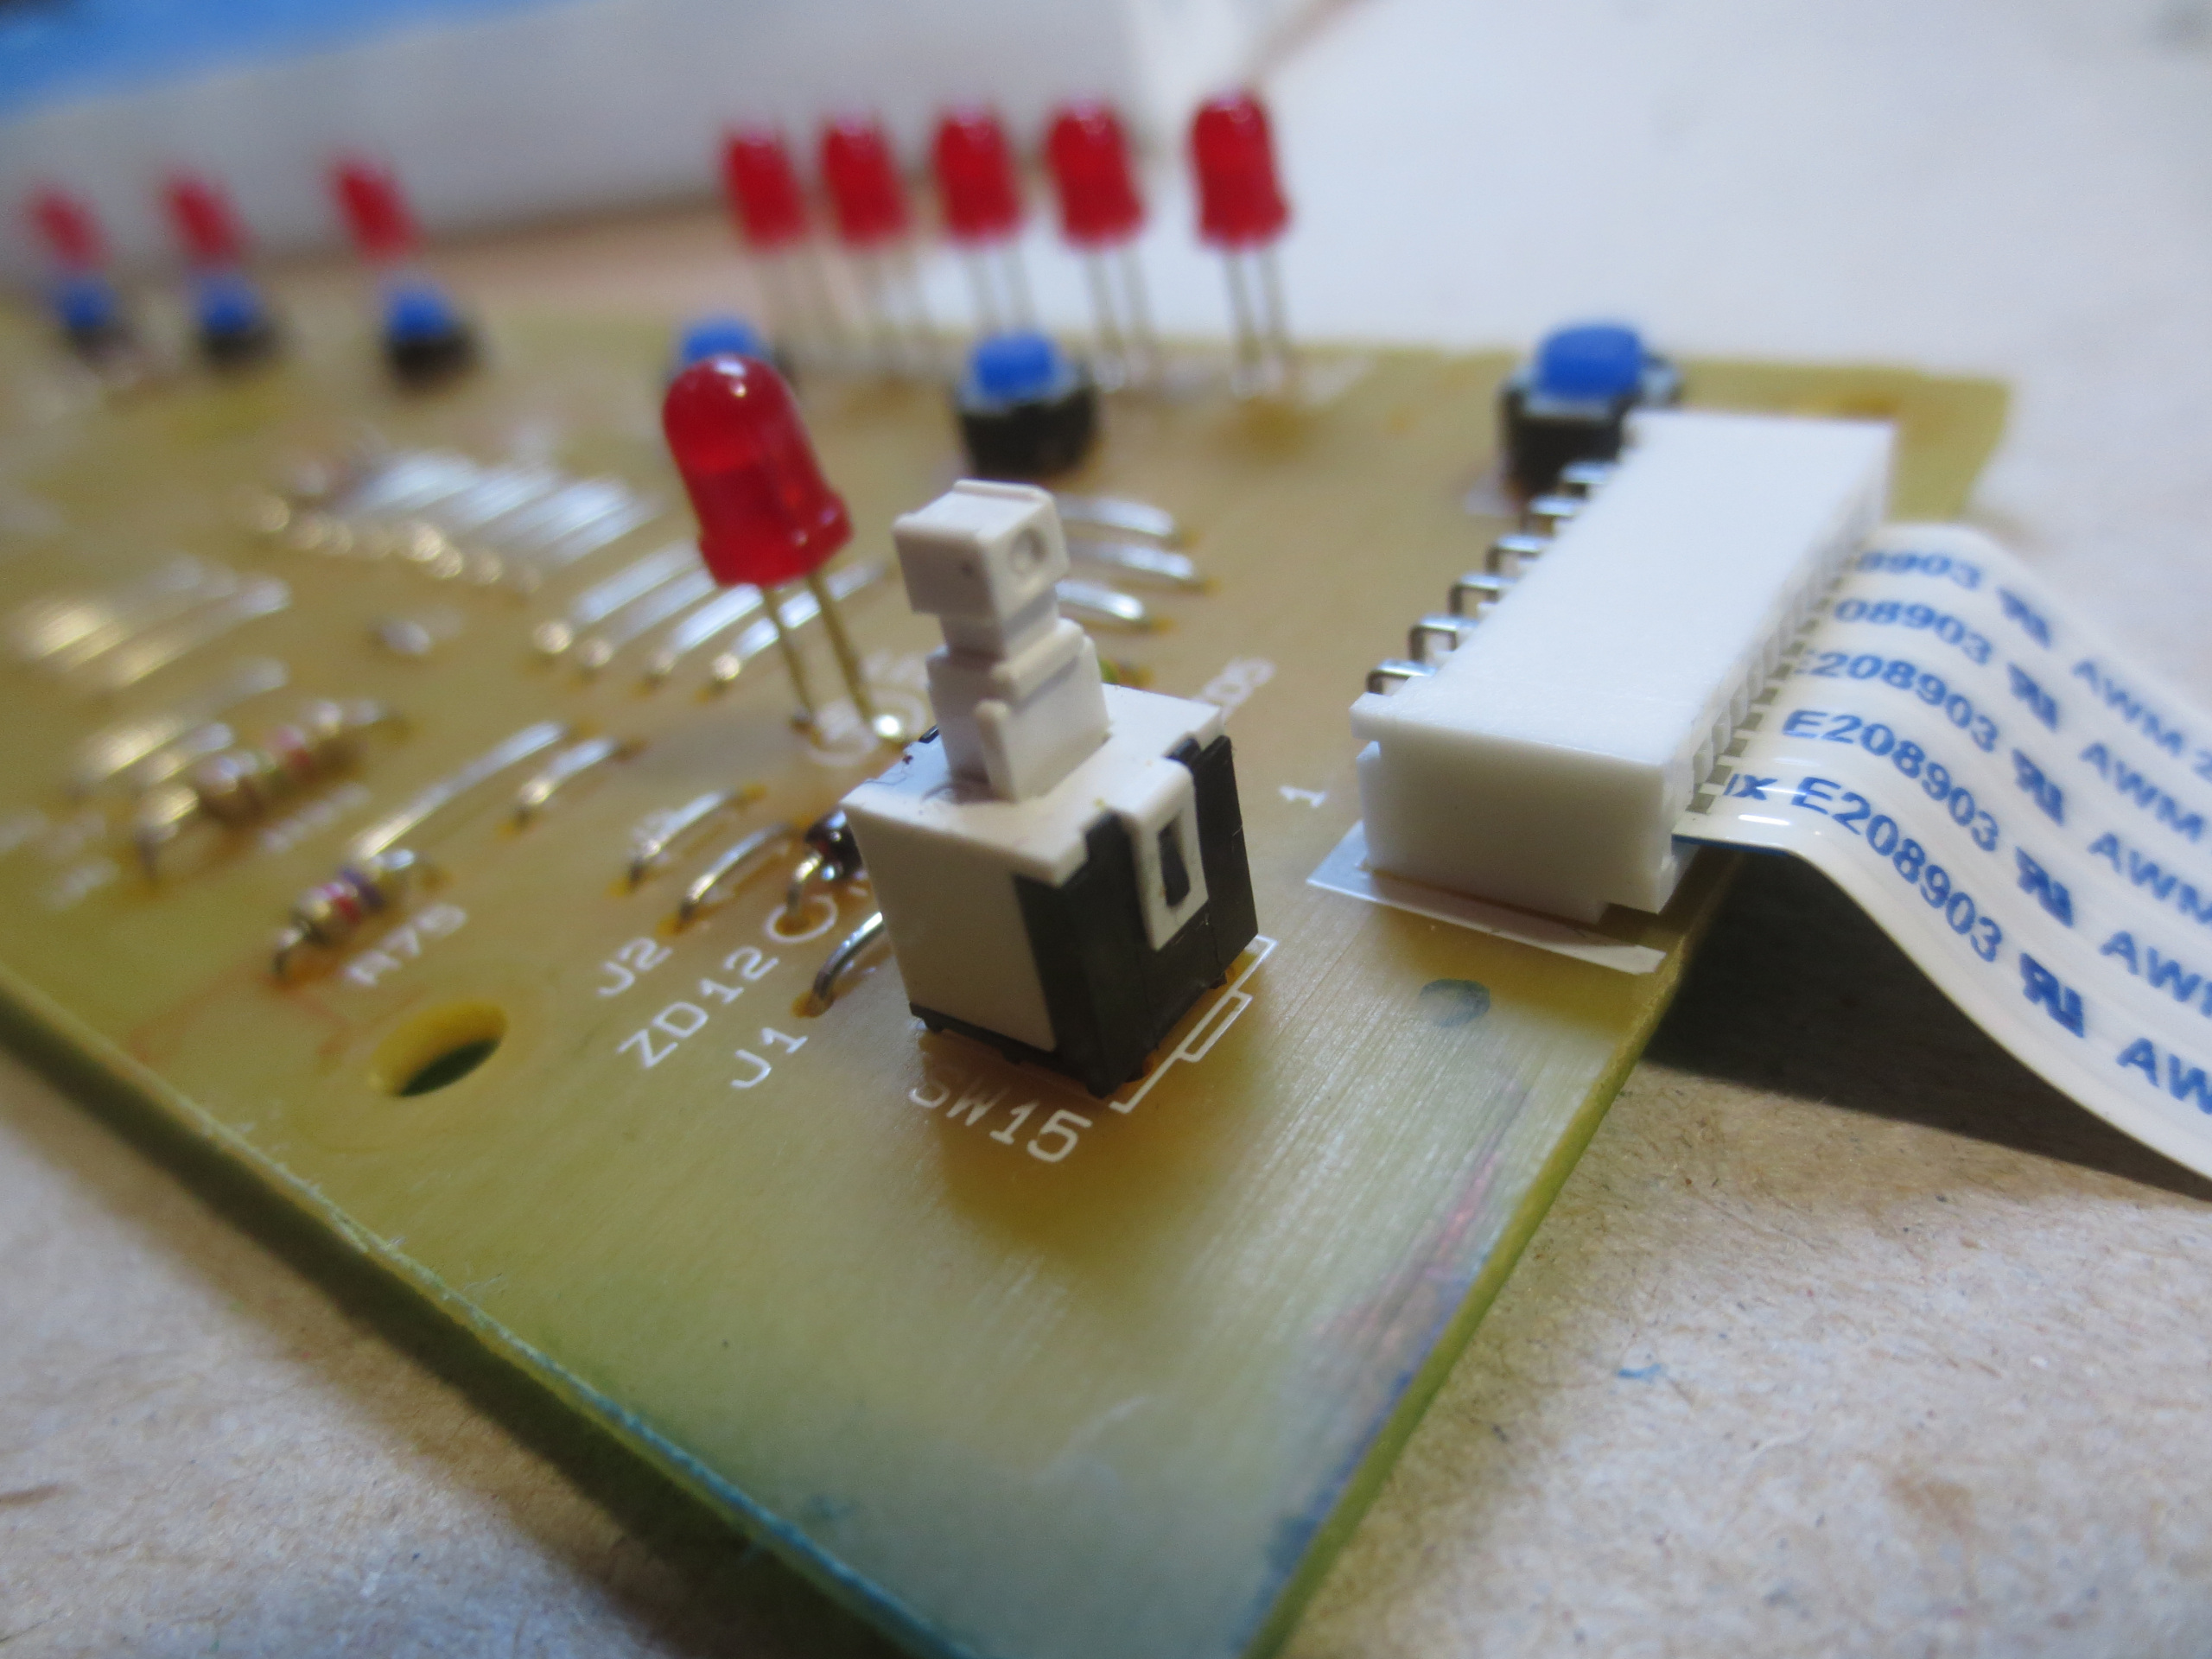 Toaster's circuit board